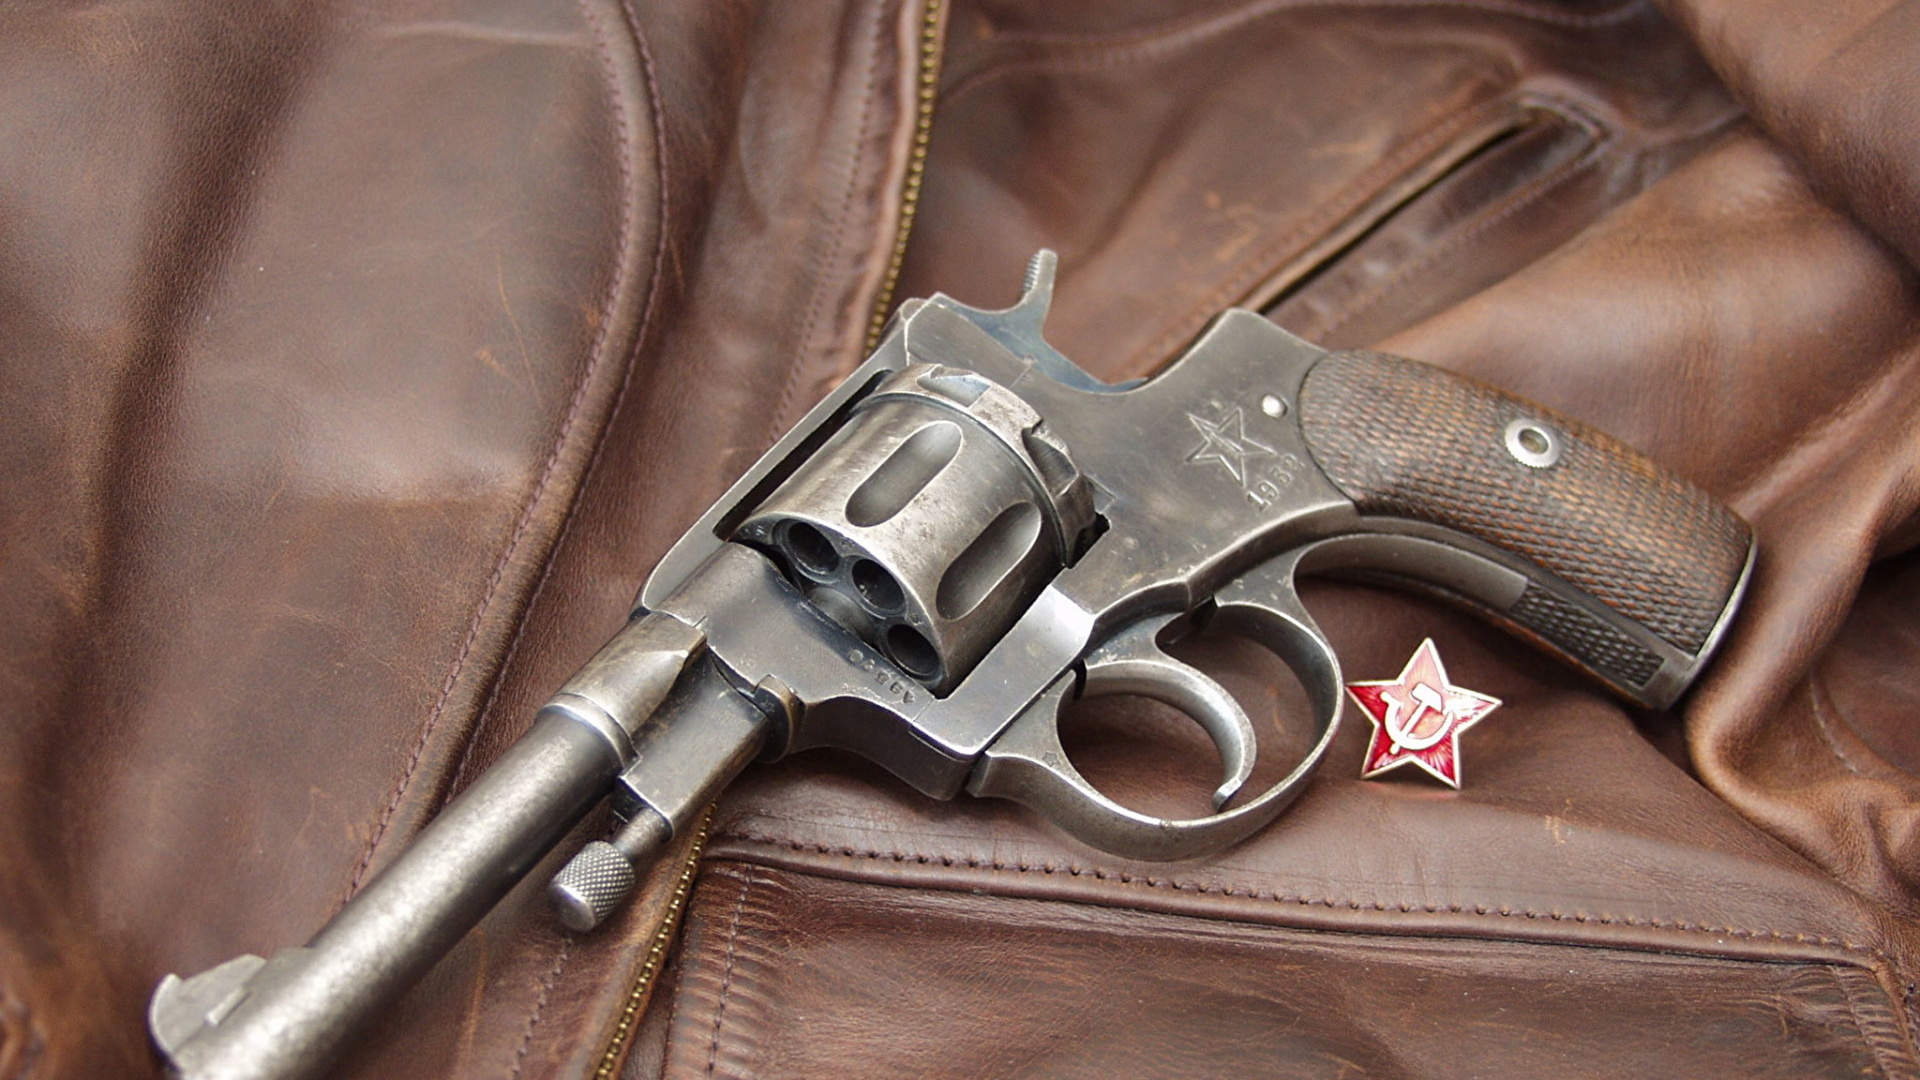 Handfeuerwaffe, Feuerwaffe, Revolver, Trigger, Pistole Zubehör. Wallpaper in 1920x1080 Resolution